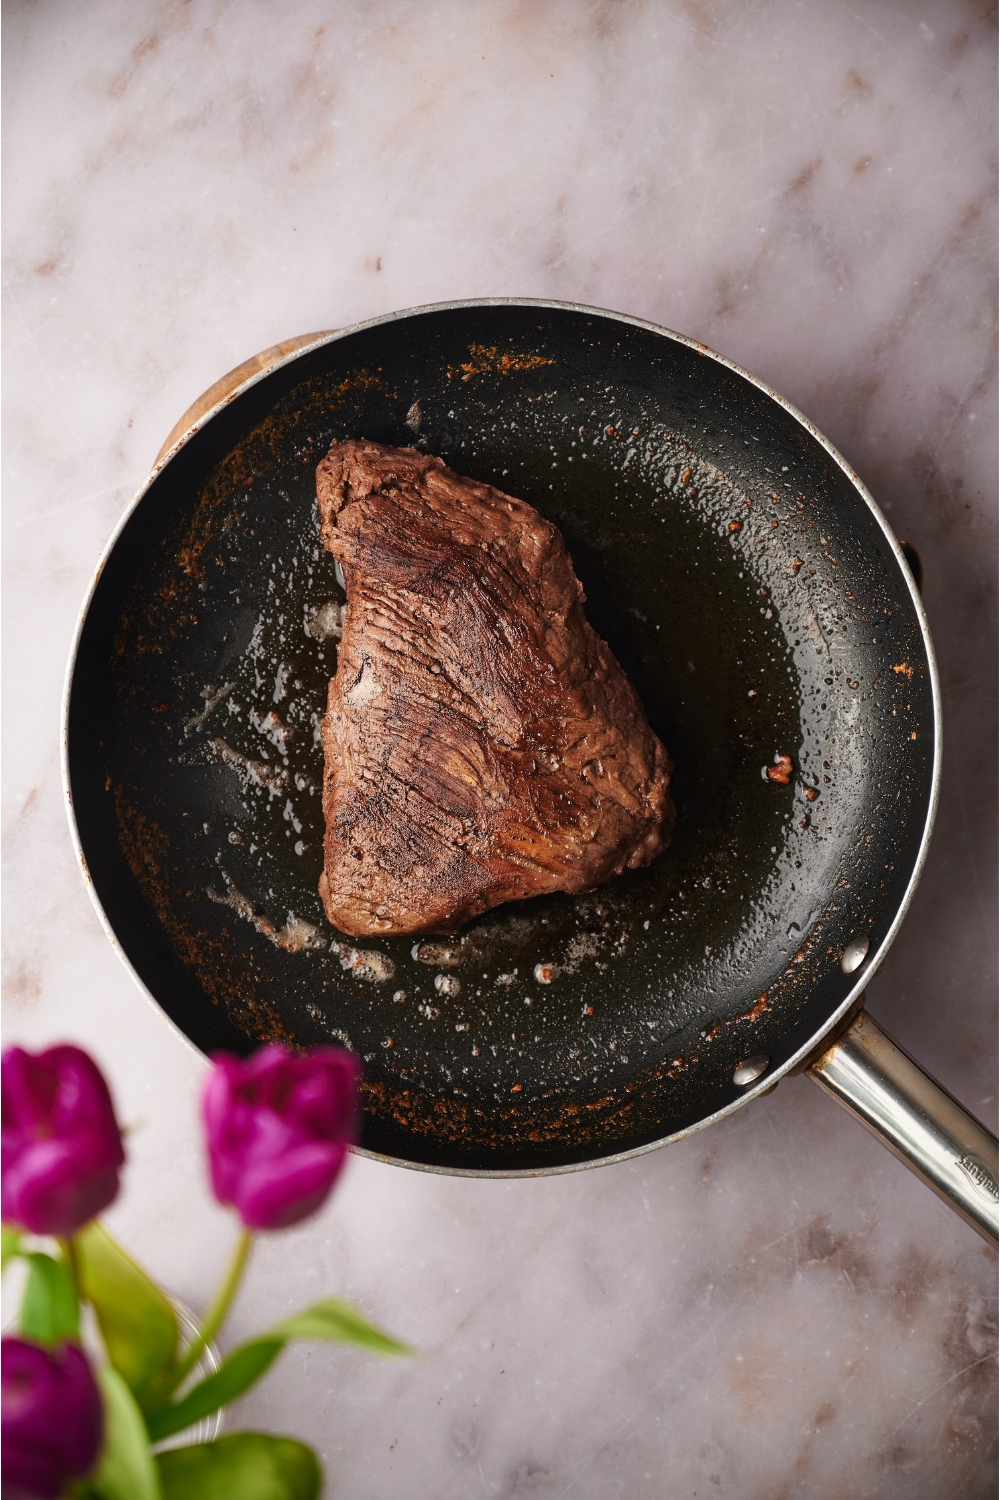 A seared steak in a black skillet.